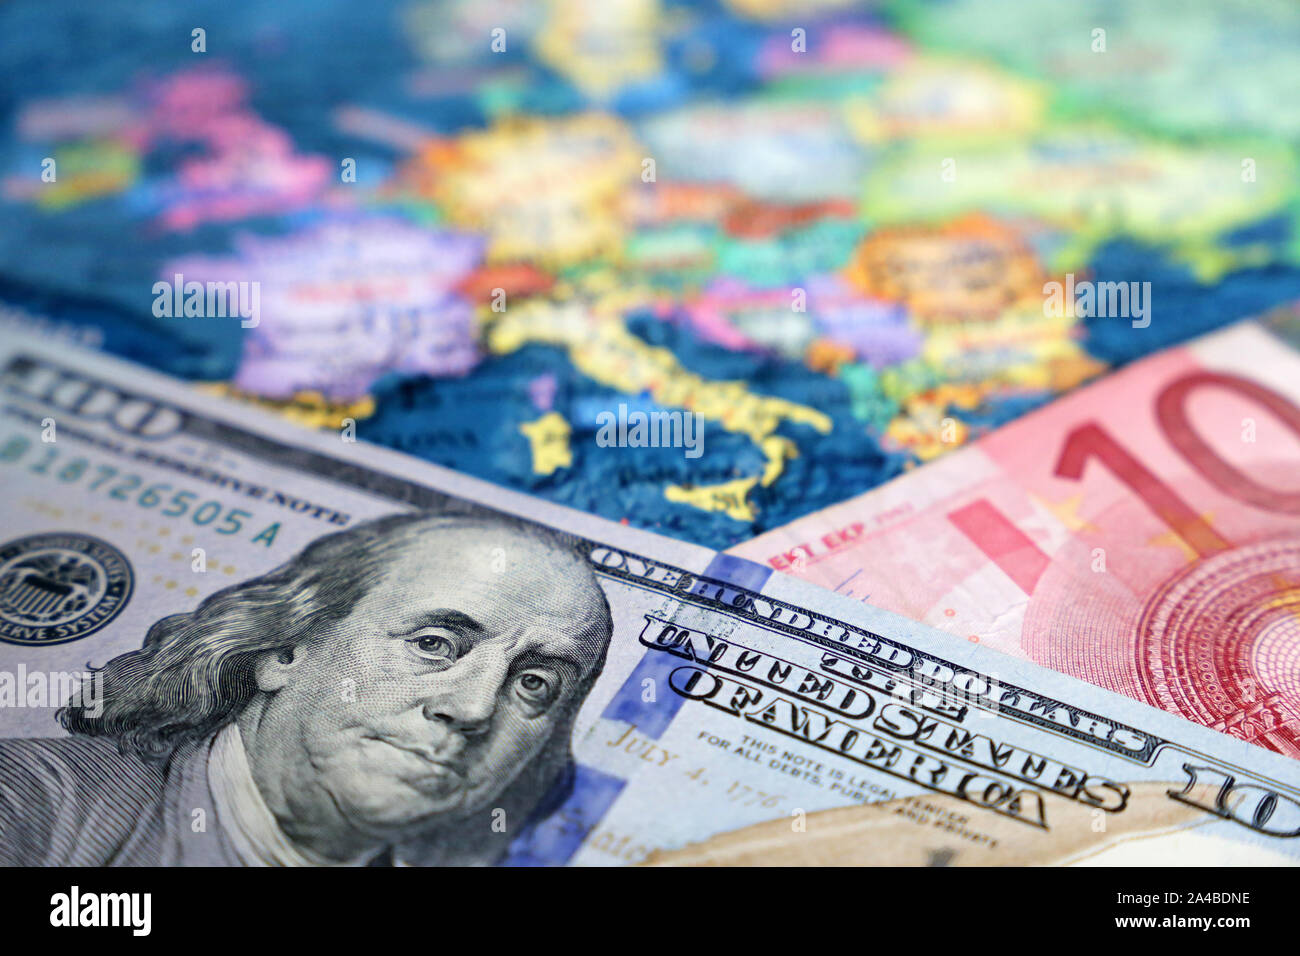 Dollaro statunitense e le banconote in euro sulla mappa dell'Europa. Concetto di tasso di cambio, gli investimenti e gli scambi commerciali tra Stati Uniti e Unione europea Foto Stock